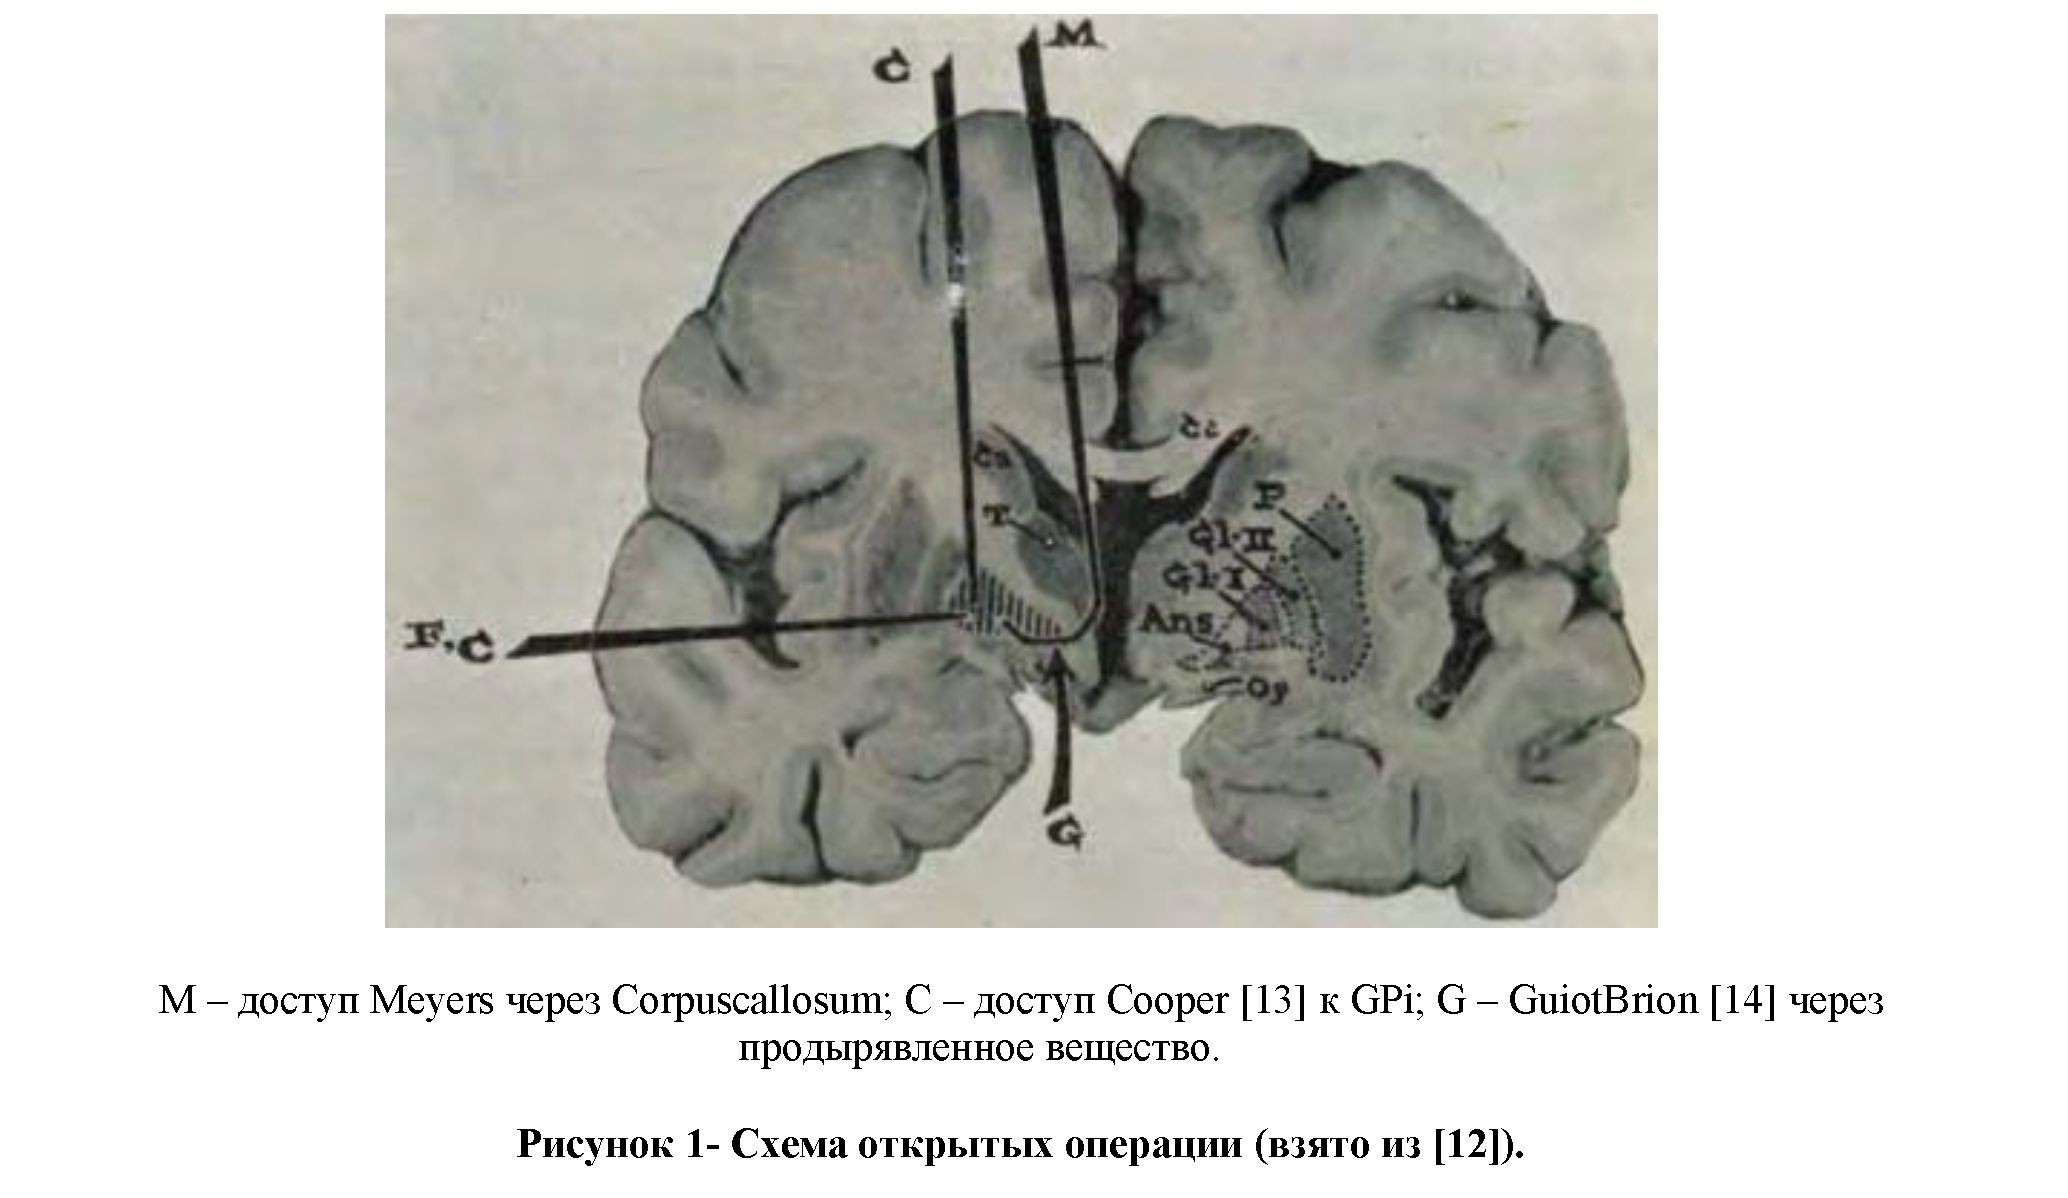 История нейрохирургического лечения болезни Паркинсона